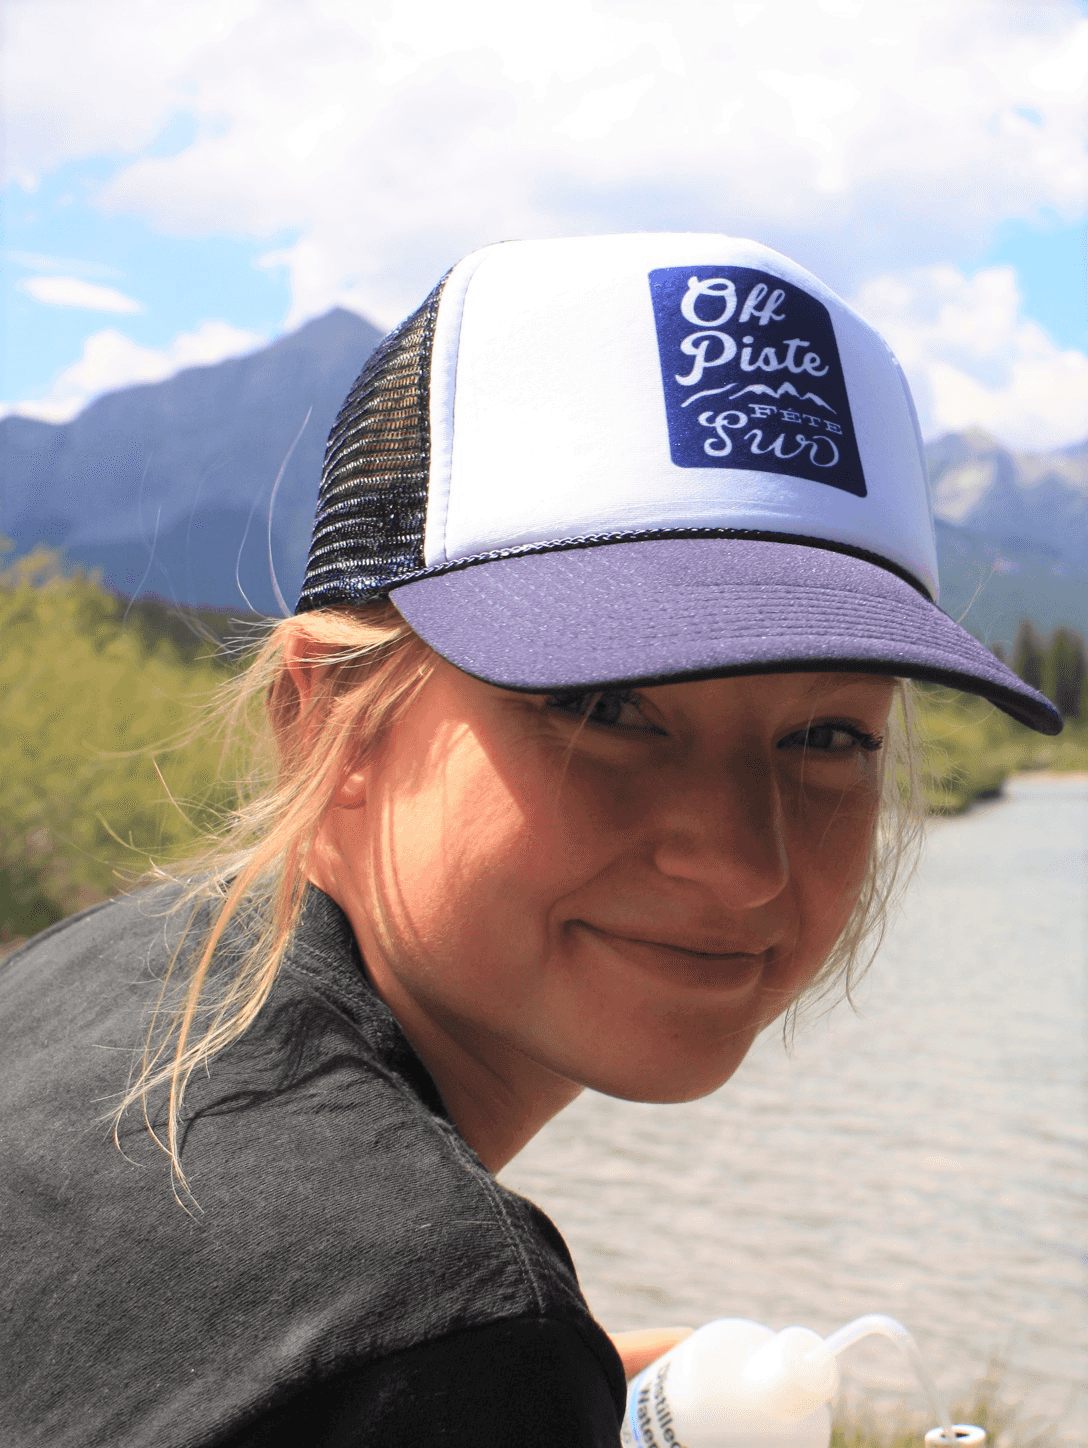 Mary Kruk, Spécialiste des données sur l’eau, souriant, avec une casquette bleue et blanche et une montagne et un ruisseau en arrière-plan.